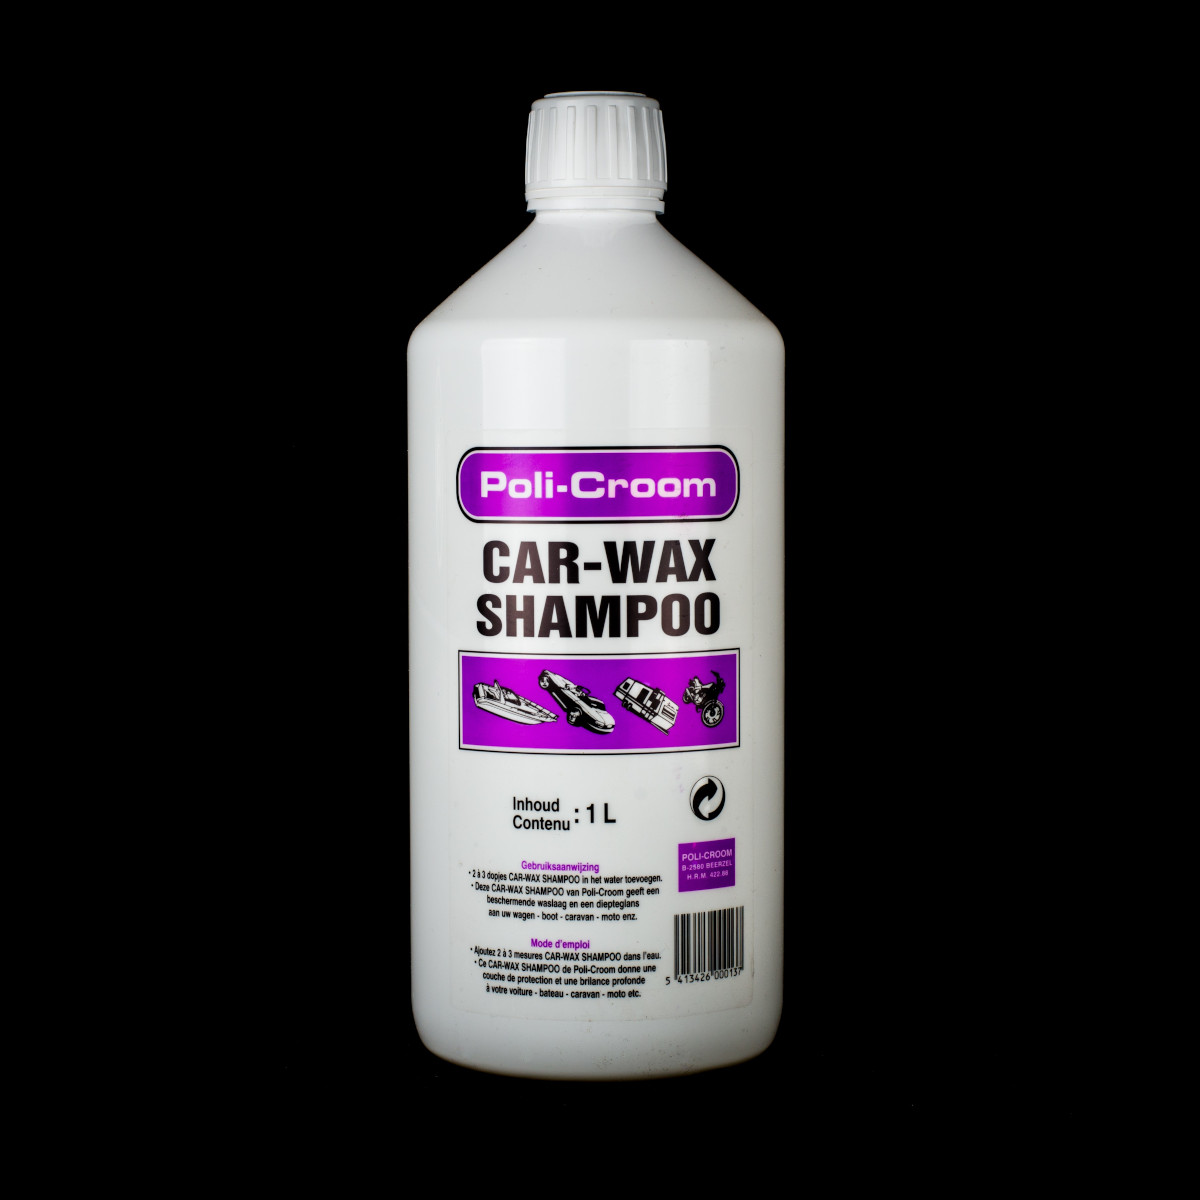 Car-Wax Shampoo Poli-Croom